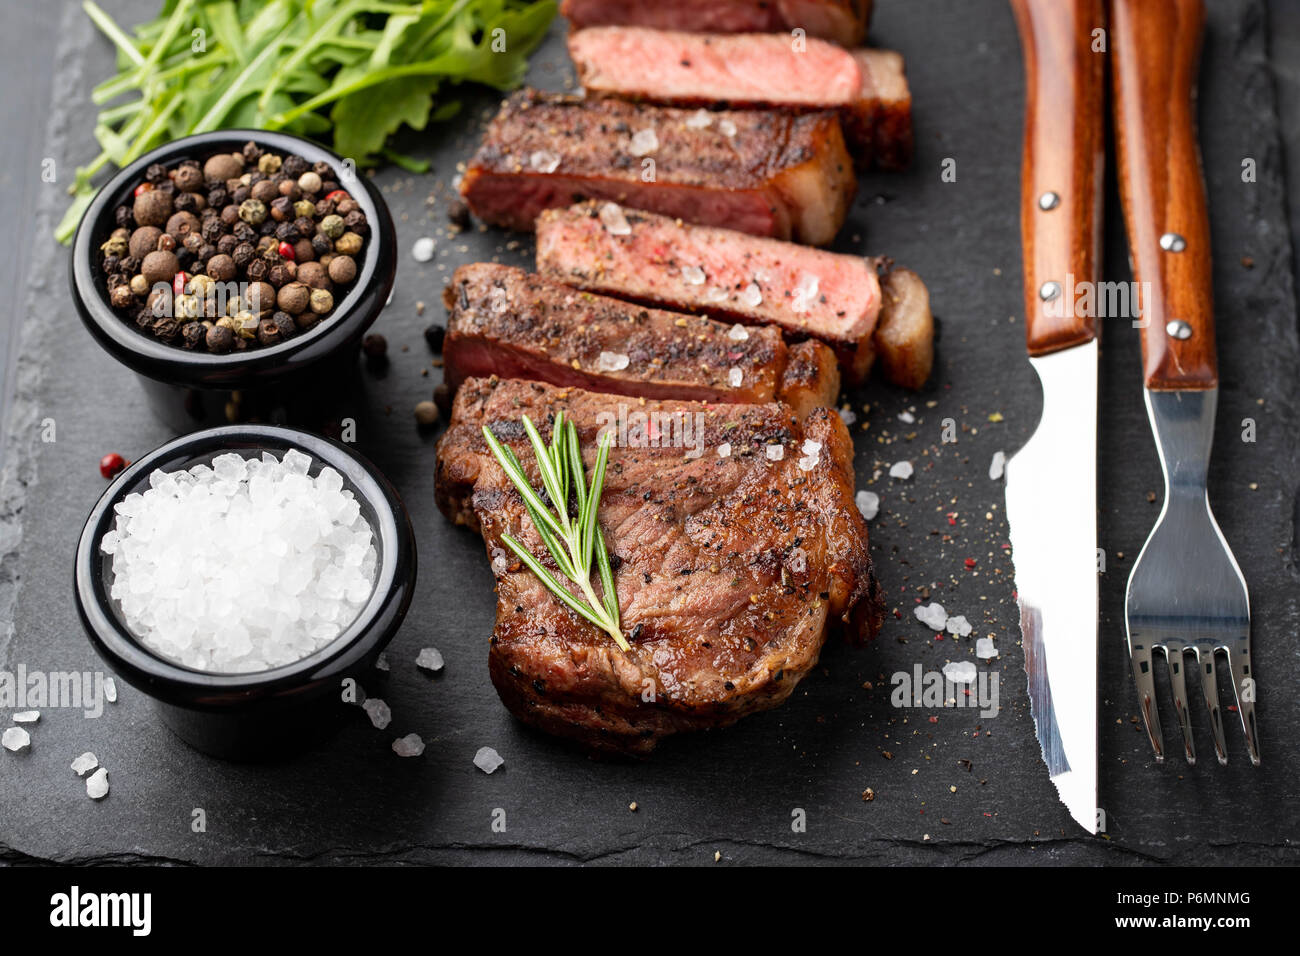 Closeup bereit Steak New York fleischrassen von Black Angus mit Kräutern, Knoblauch und Butter auf einem Stein zu essen. Das fertige Gericht zum Abendessen auf einem dunklen Stein Hintergrund. Ansicht von oben Stockfoto